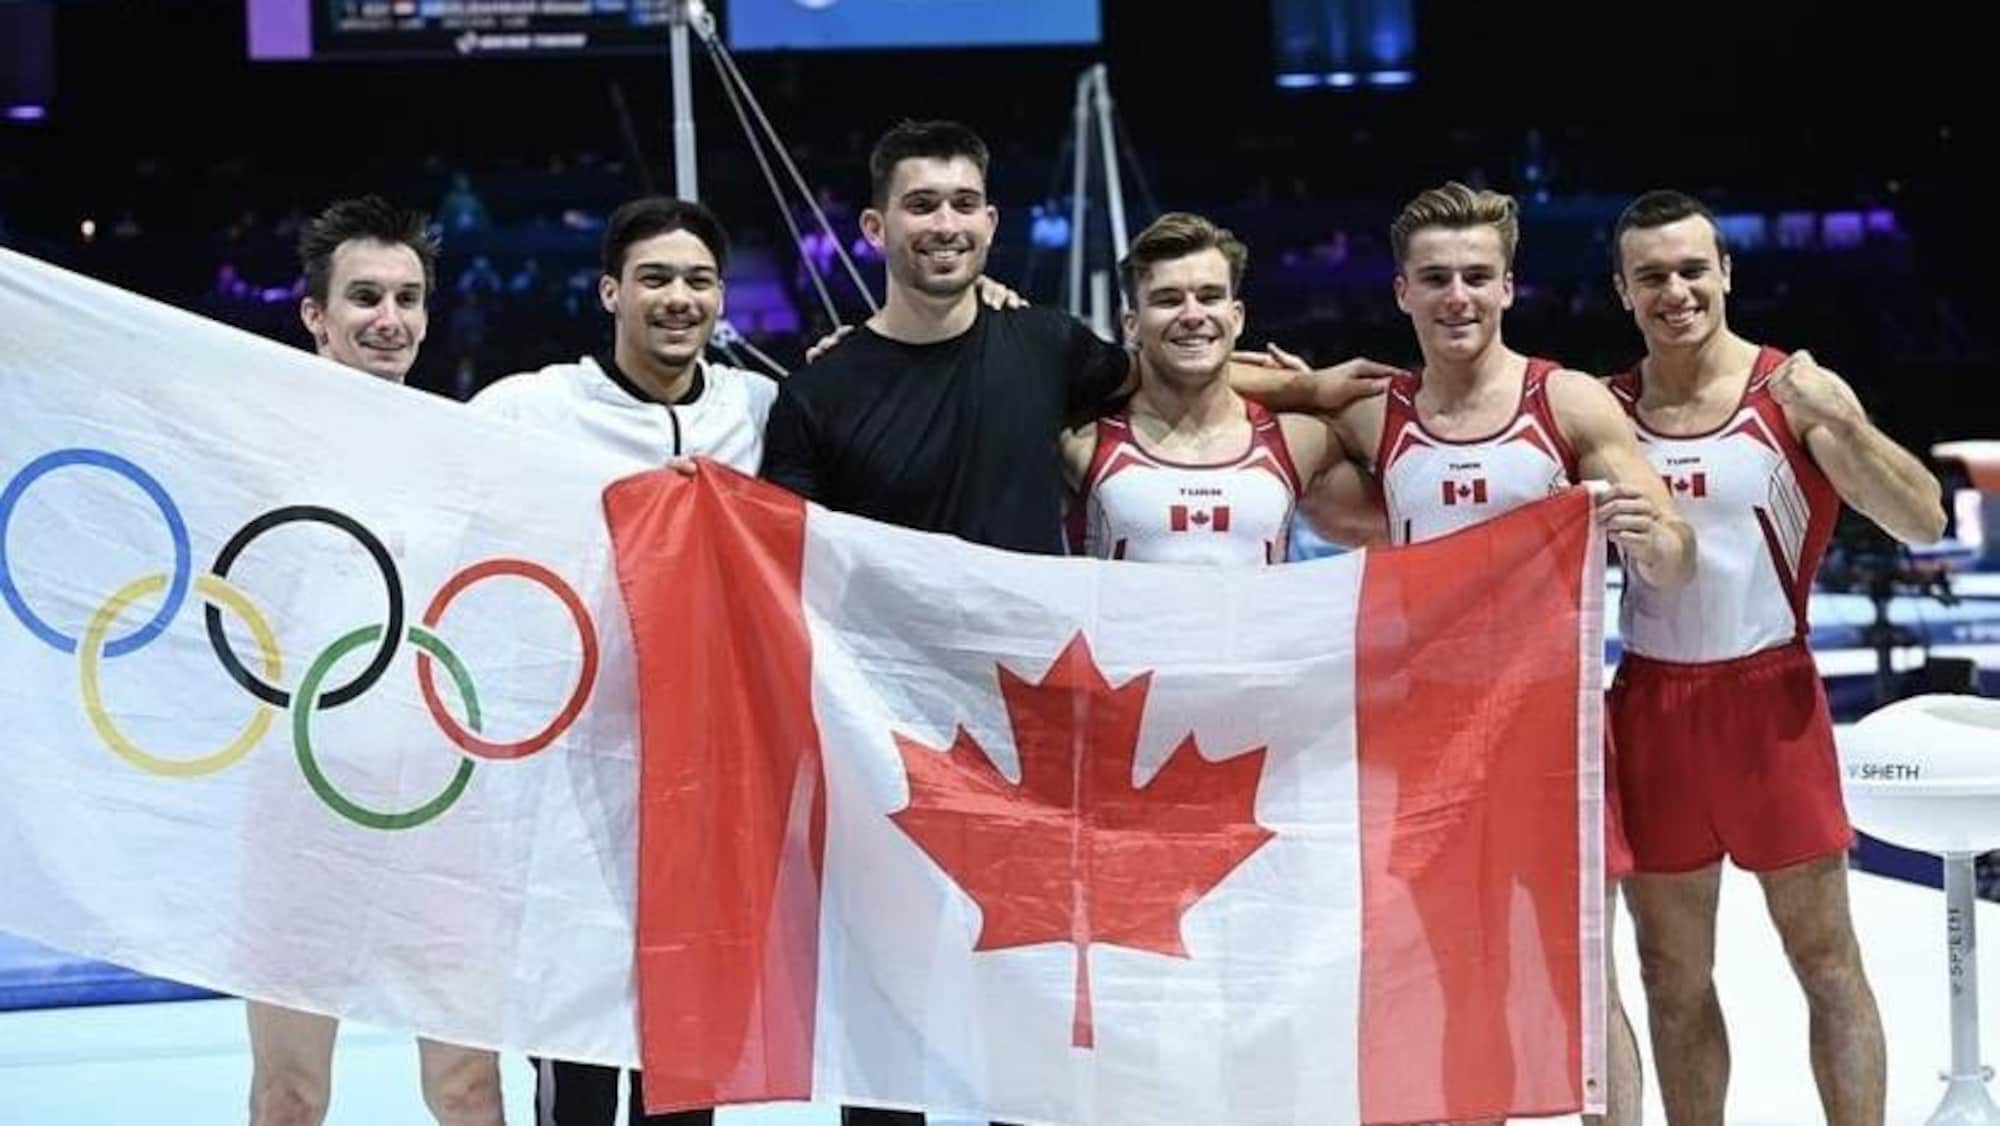 Des gymnastes prennent la pose avec un drapeau canadien et un autre des Jeux olympiques. 